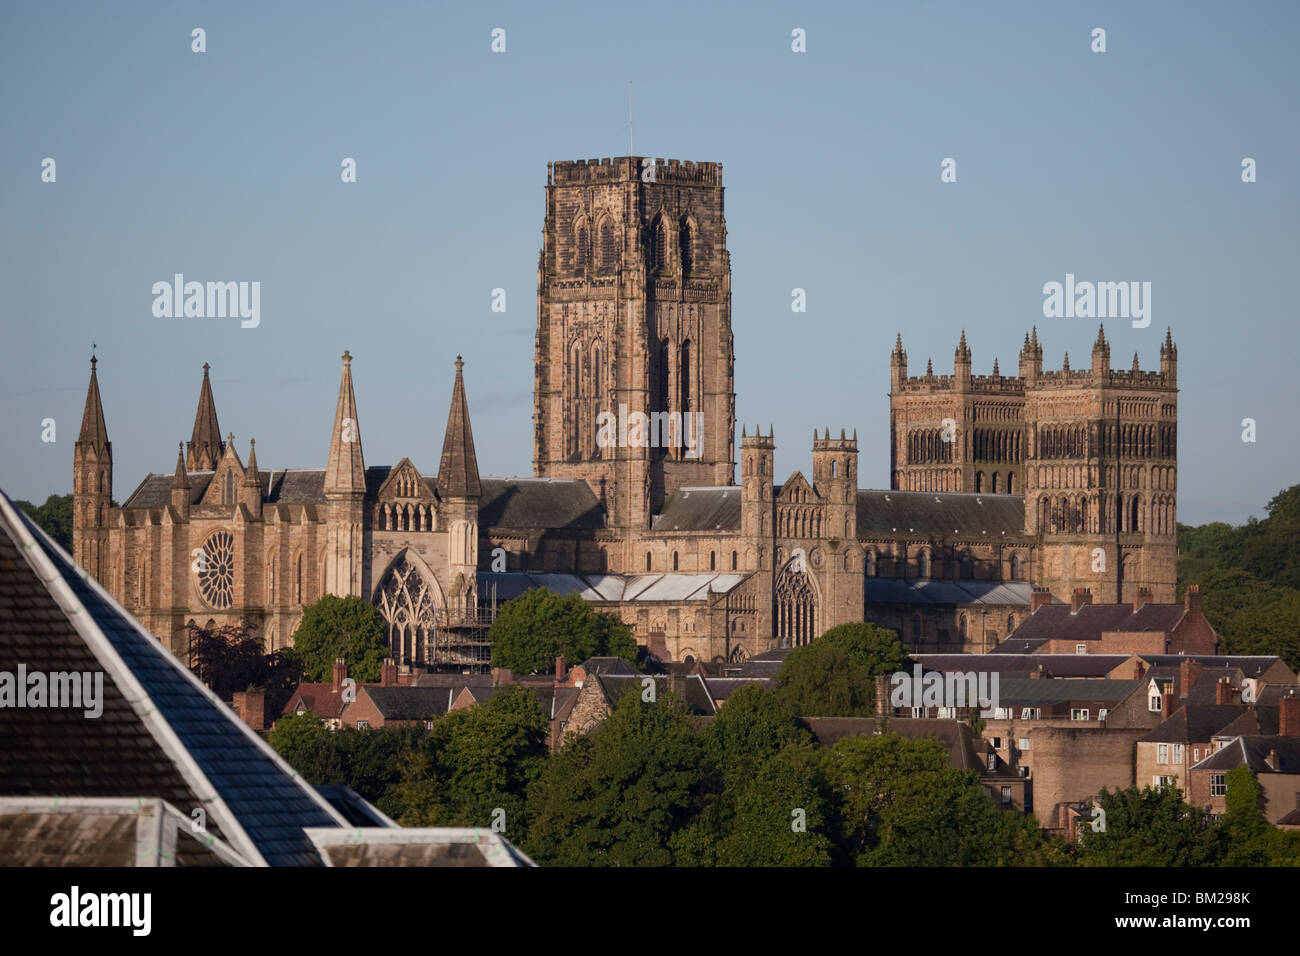 La cathédrale de Durham, au sud-est de l'UNESCO World Heritage Site, Durham, UK Banque D'Images